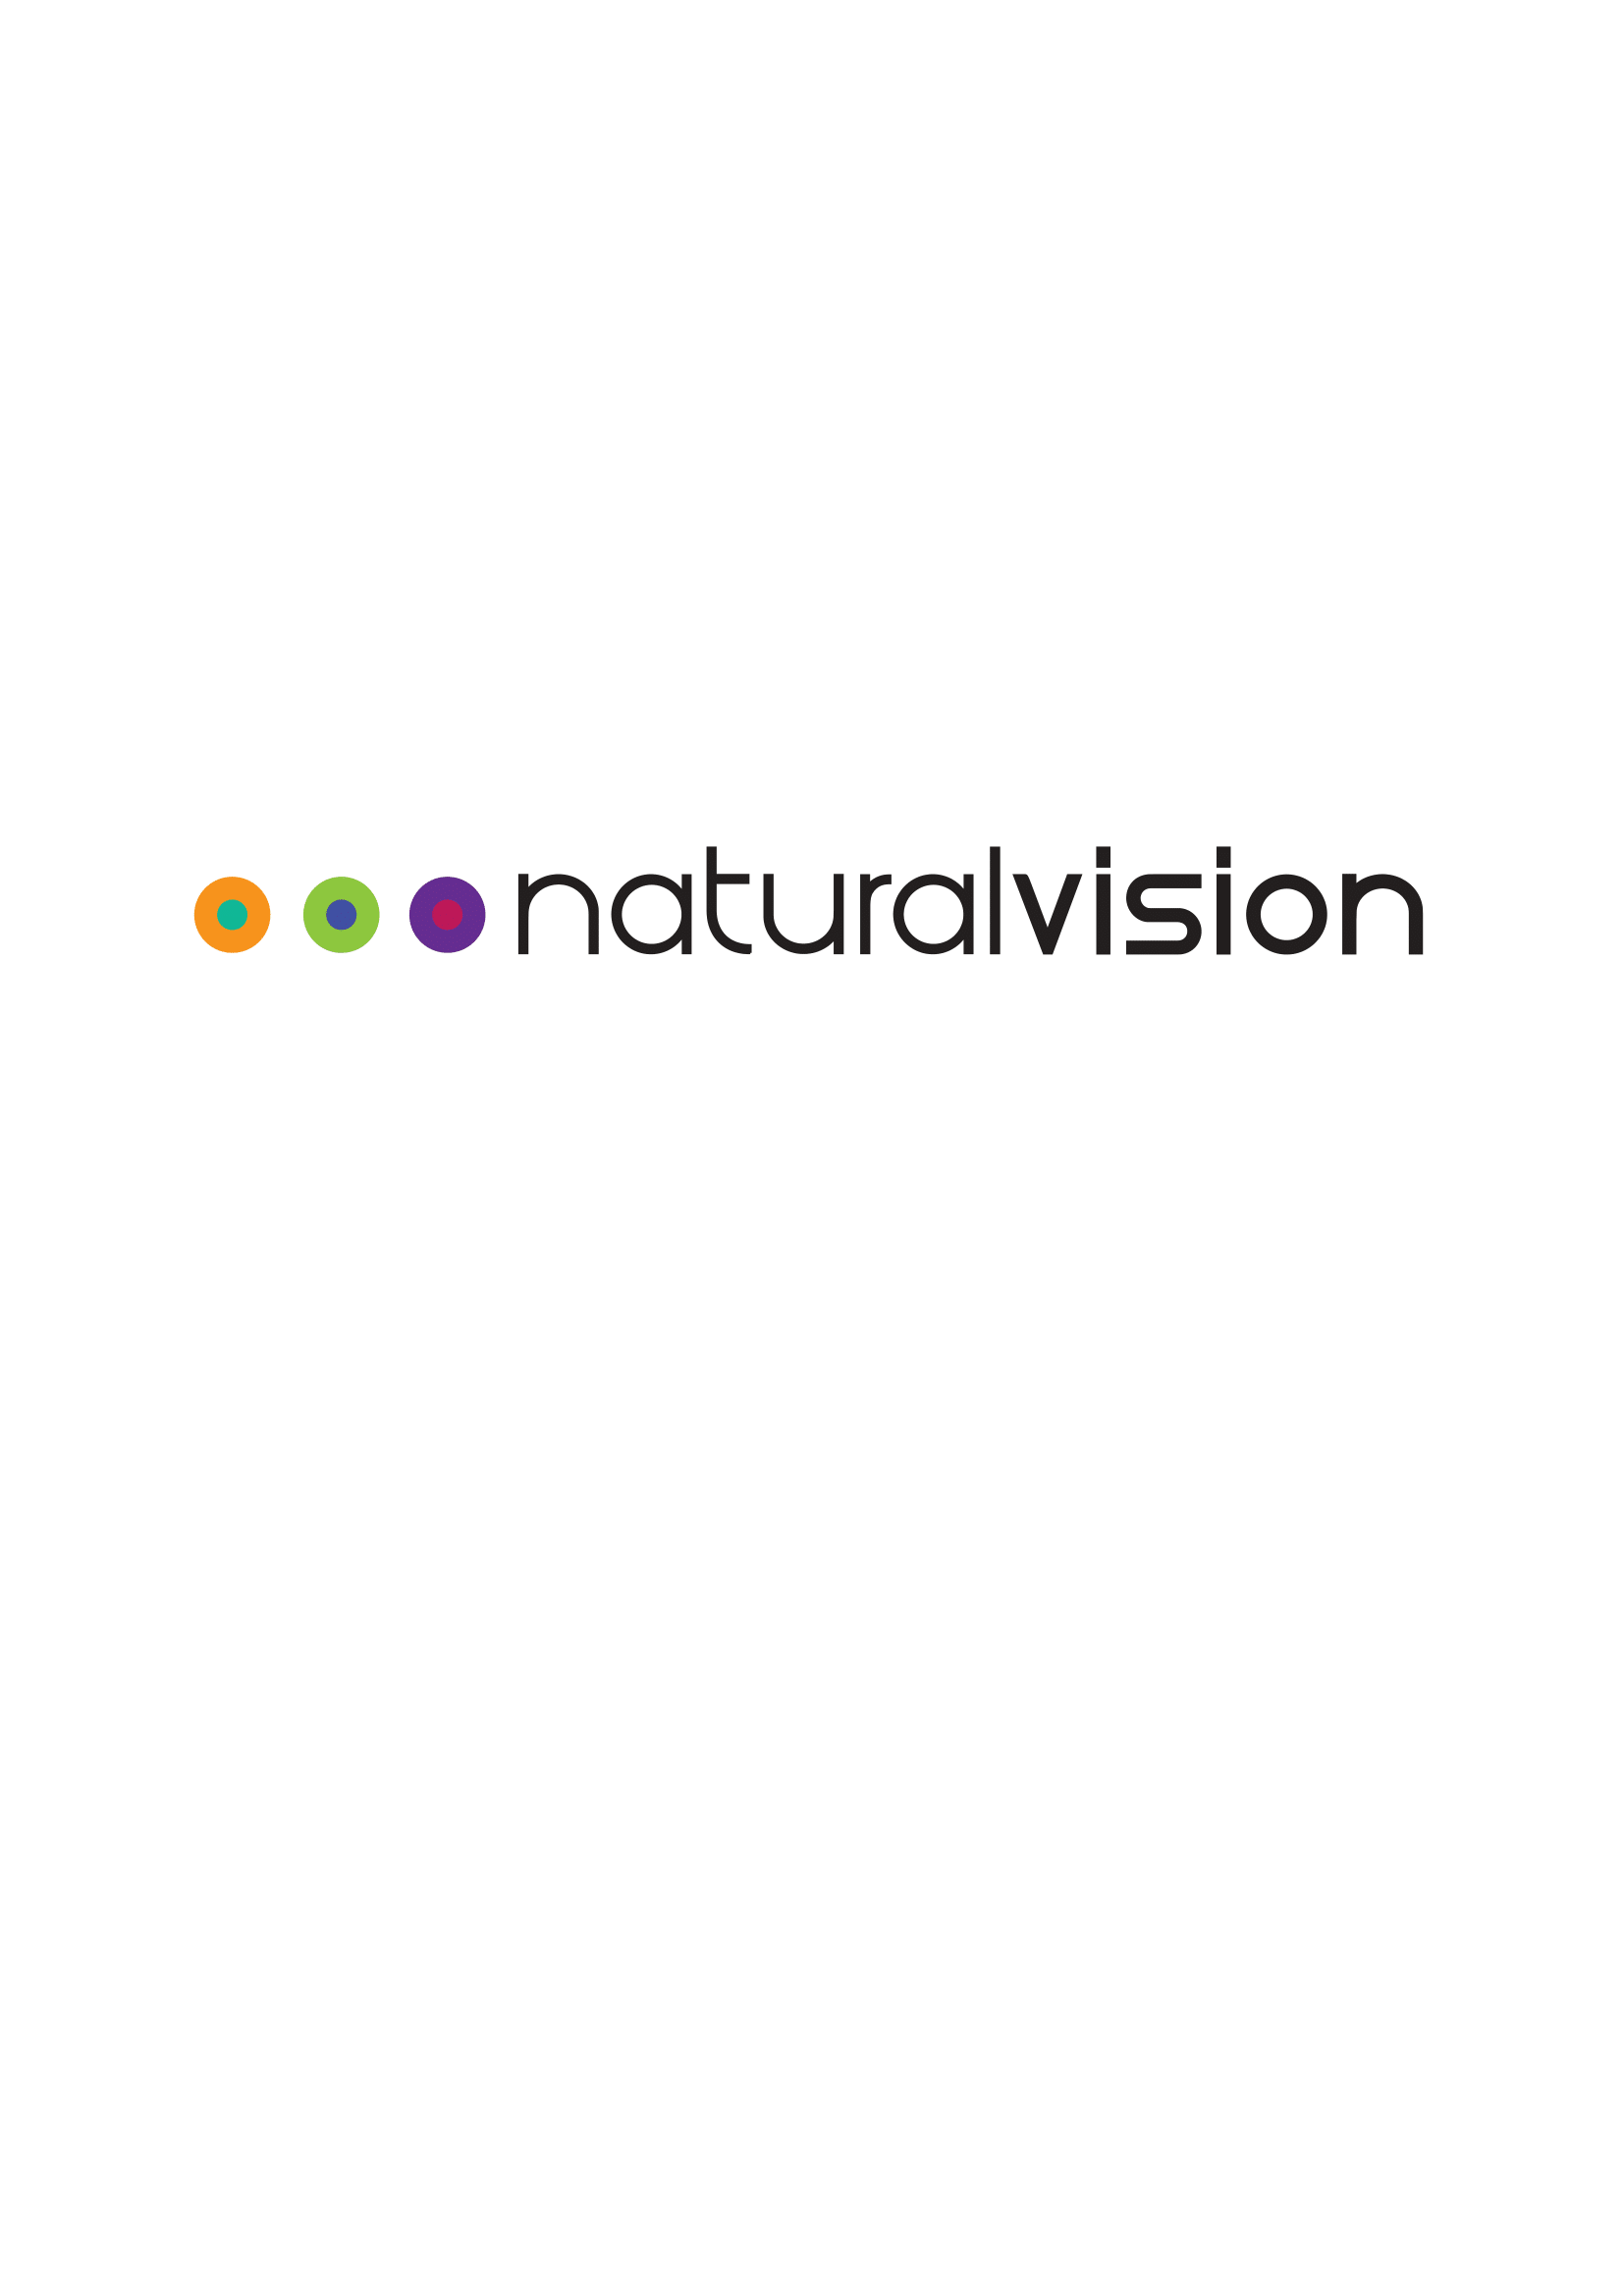 natural vision